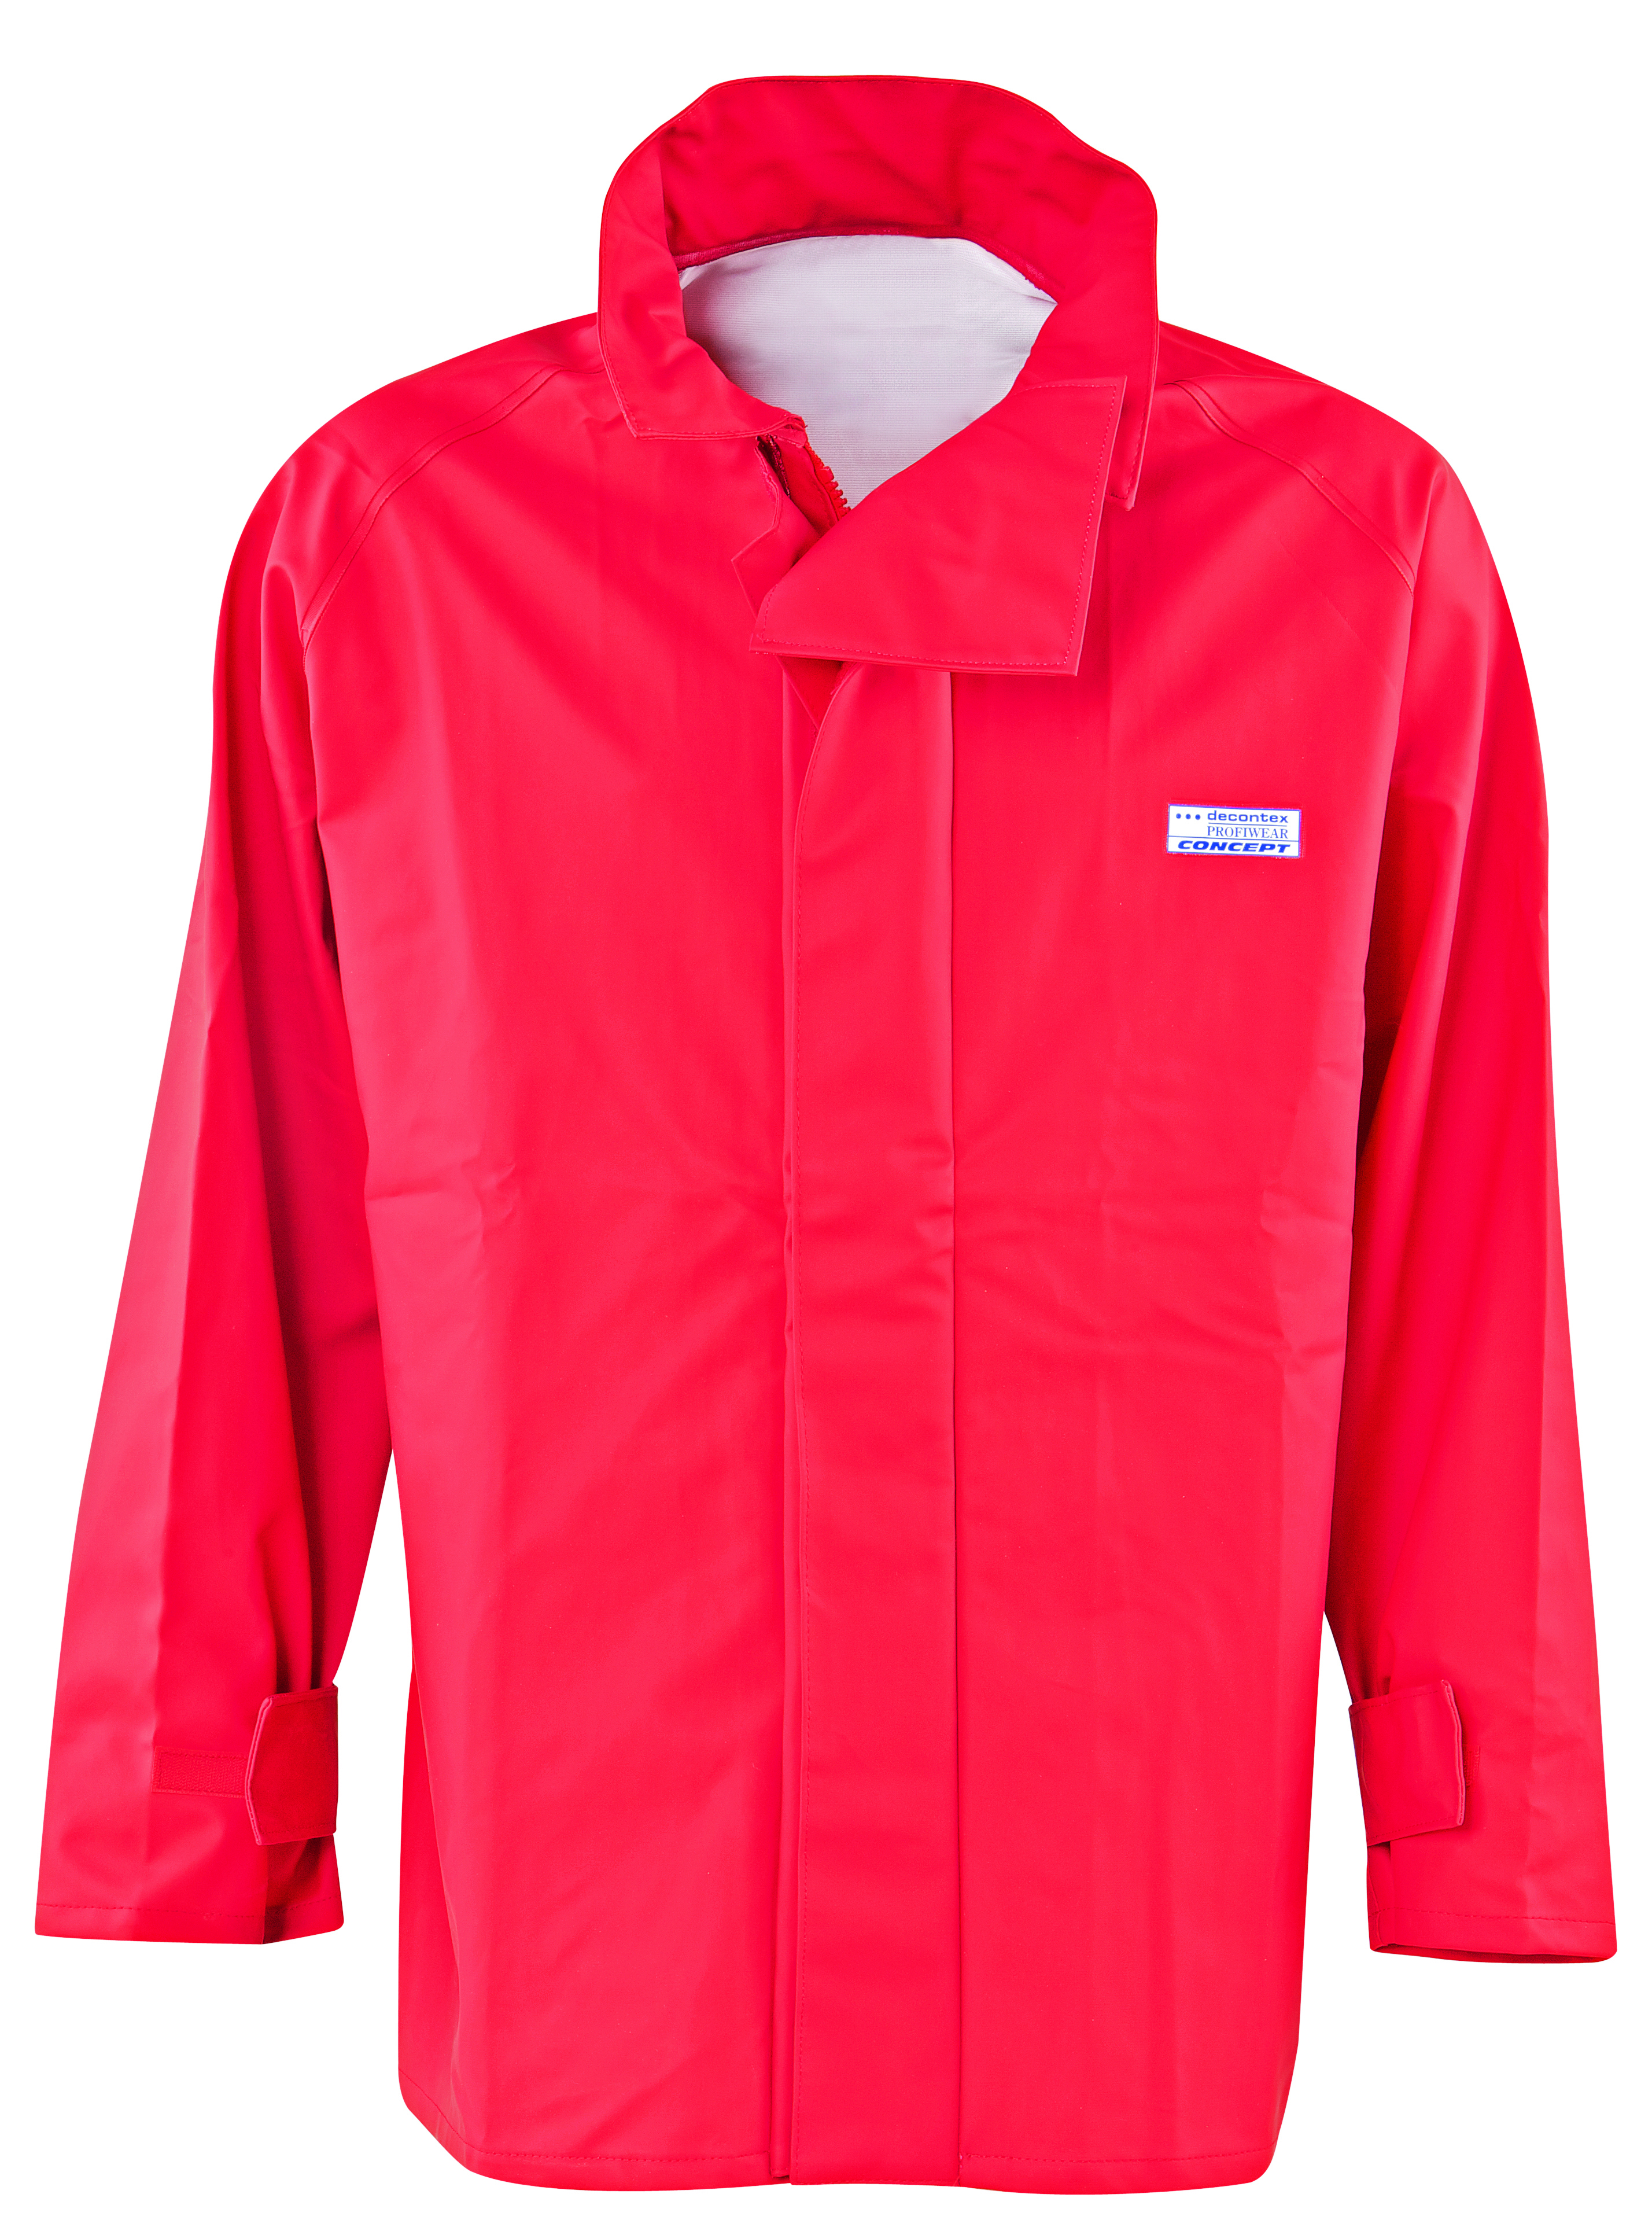 KIND-Regenschutz, Decontex-Wetter-Schutz-Kleidung, Regen-Nässe-Jacke, CONCEPT, rot